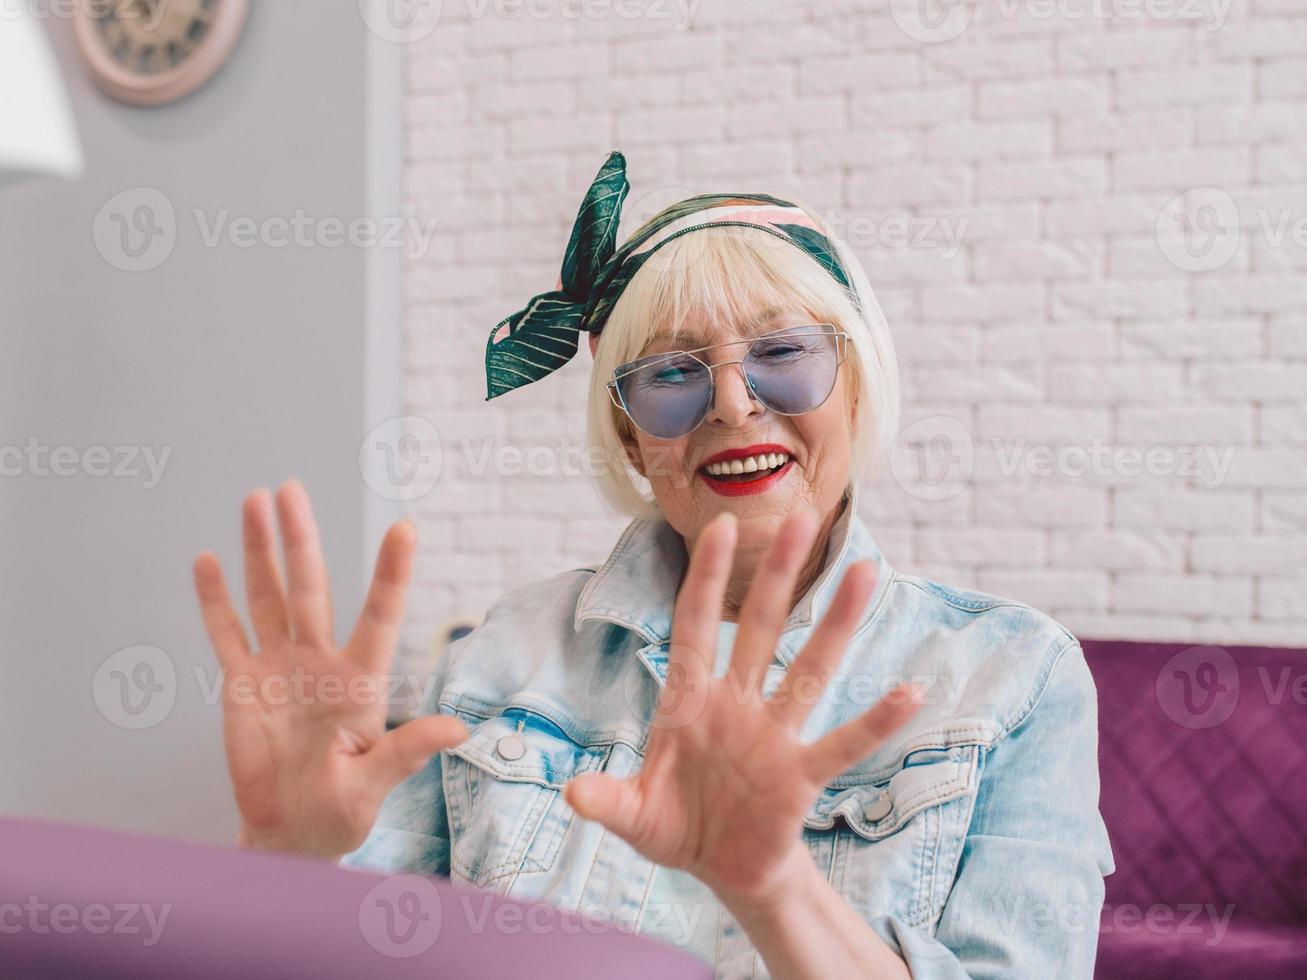 manicure meester in blauwe handschoenen afroming handen van oudere stijlvolle vrouw in blauwe zonnebril en spijkerjasje zittend op manicure salon foto